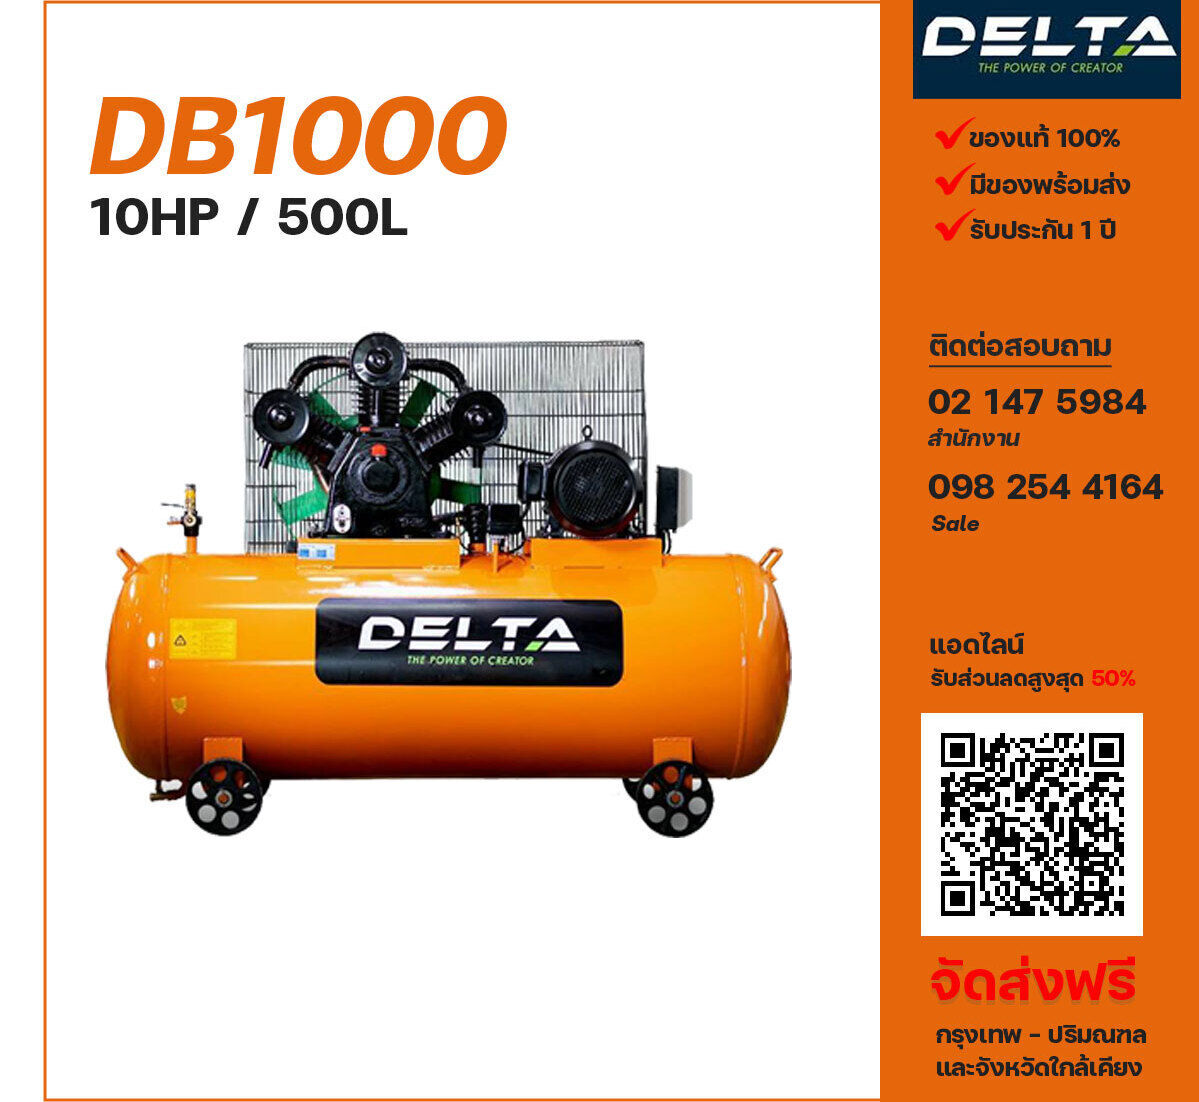 ปั๊มลมเดลต้า DELTA DB1000 380V ปั๊มลมลูกสูบ ขนาด 3 สูบ 10 แรงม้า 500 ลิตร DELTA พร้อมมอเตอร์ ไฟ 380V ส่งฟรี กรุงเทพฯ-ปริมณฑล รับประกัน 1 ปี
